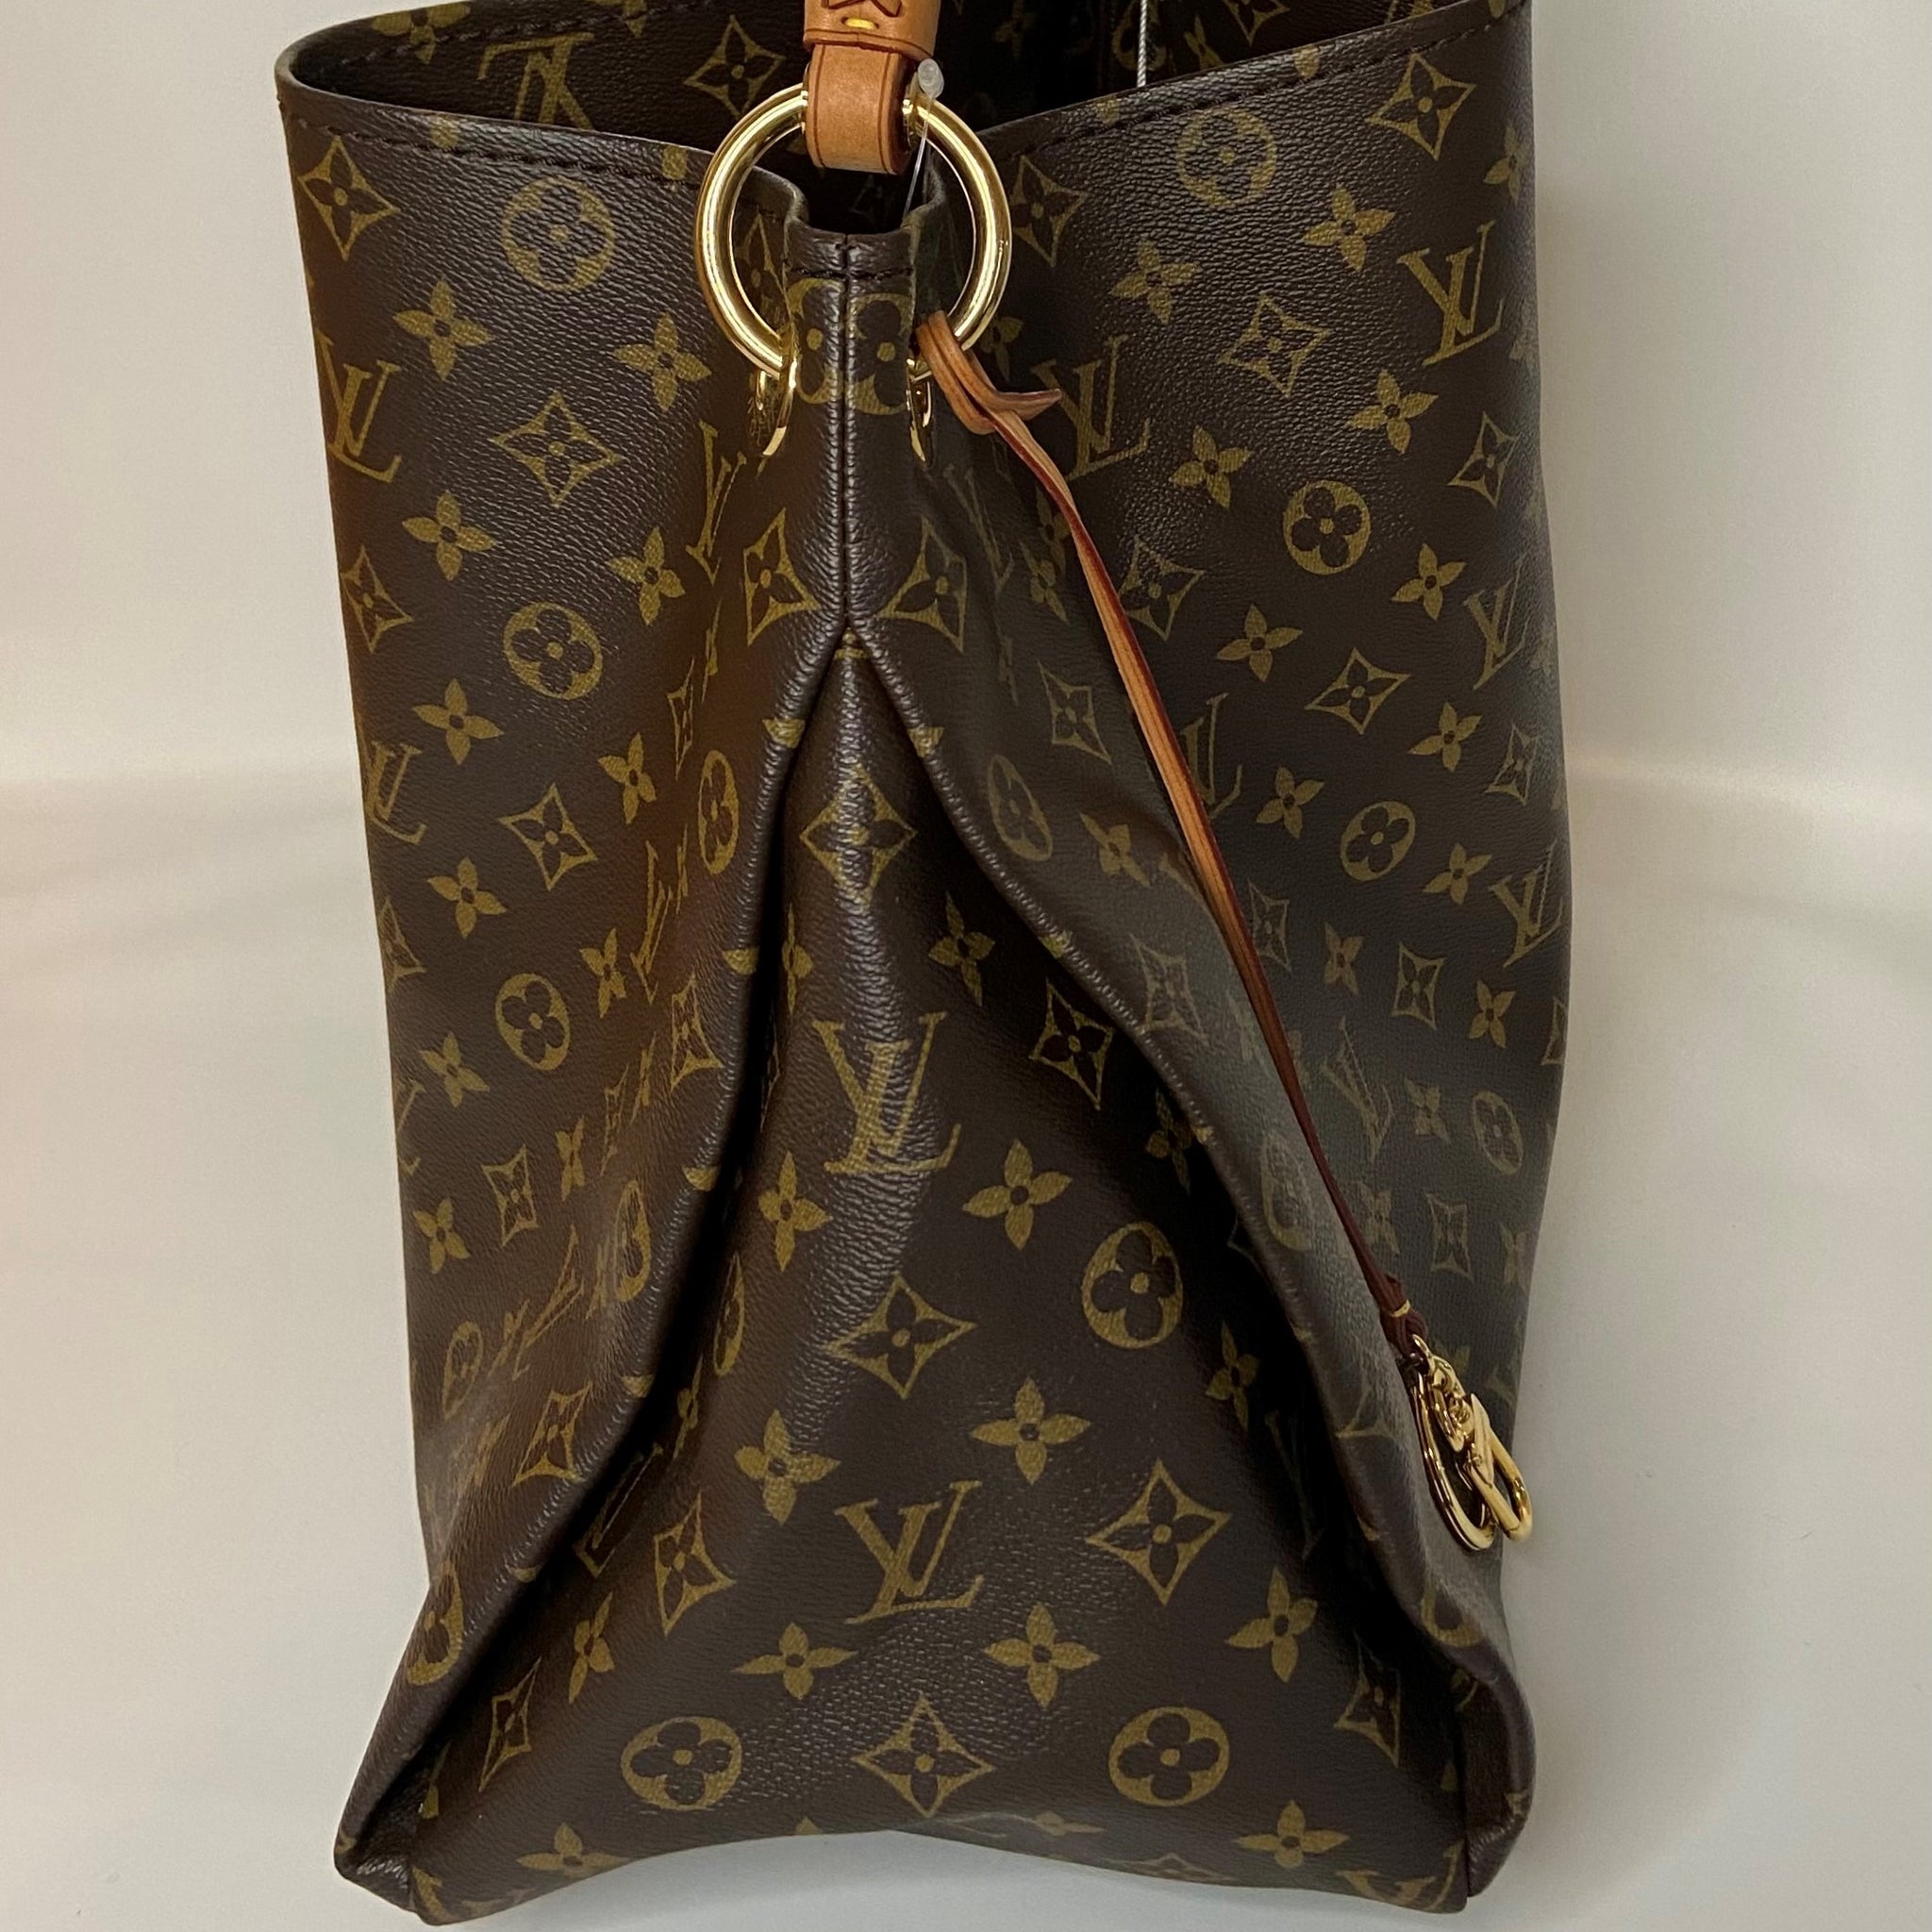 Louis Vuitton Artsy Bag Review 